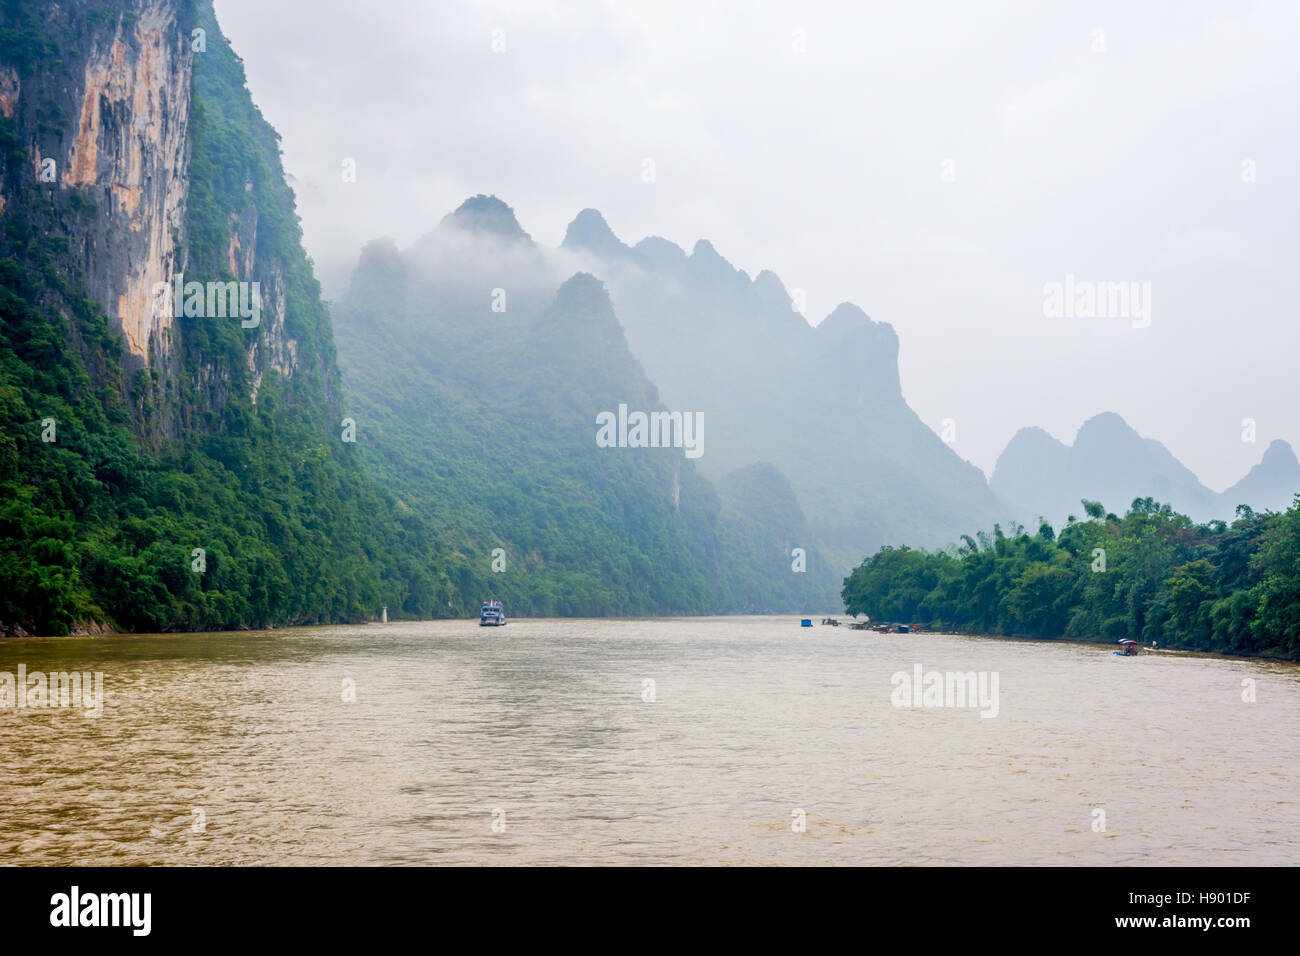 Rivière Li avec les nuages et le brouillard brumeux entouré par de célèbres montagnes karstiques, Zhuang du Guangxi, Chine Banque D'Images